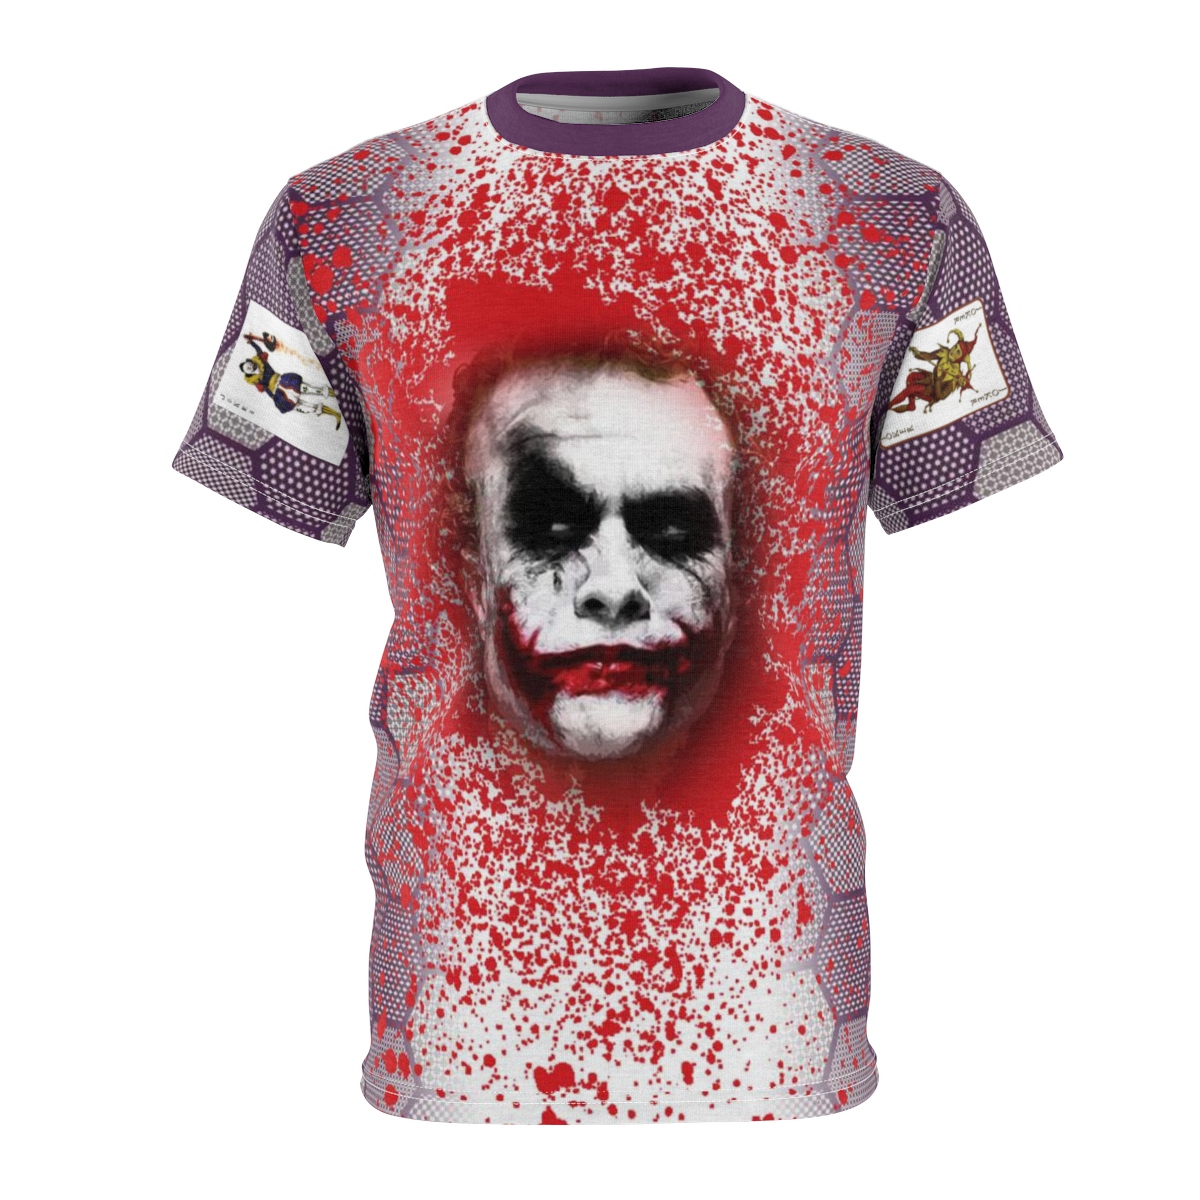 The Iconic Joker T-Shirt by GourmetKickz